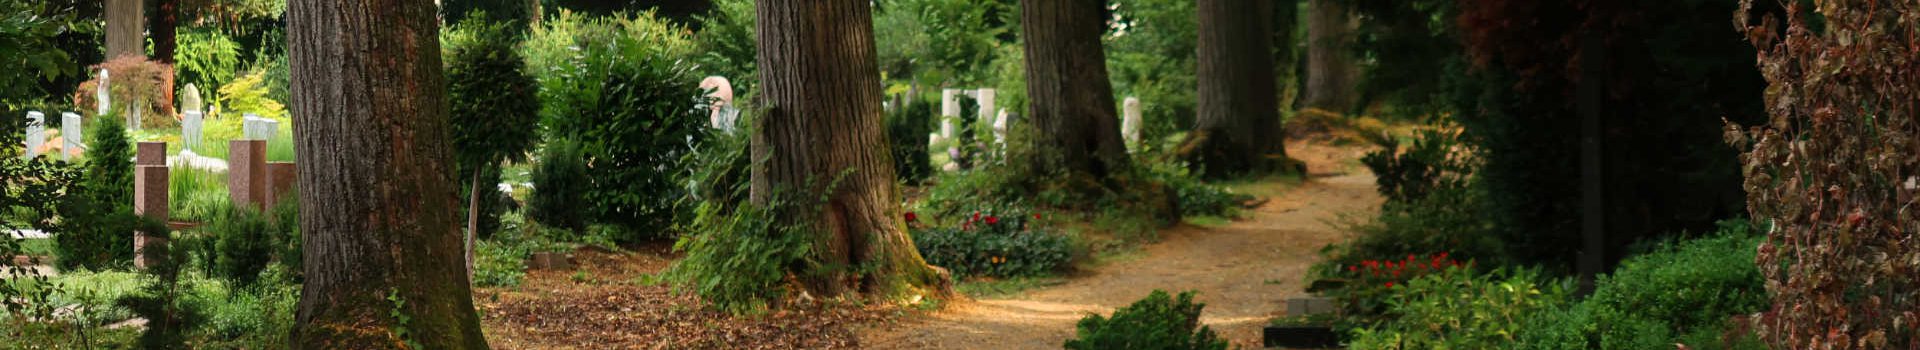 Der Bergfriedhof – Ein ungewöhnlicher Park